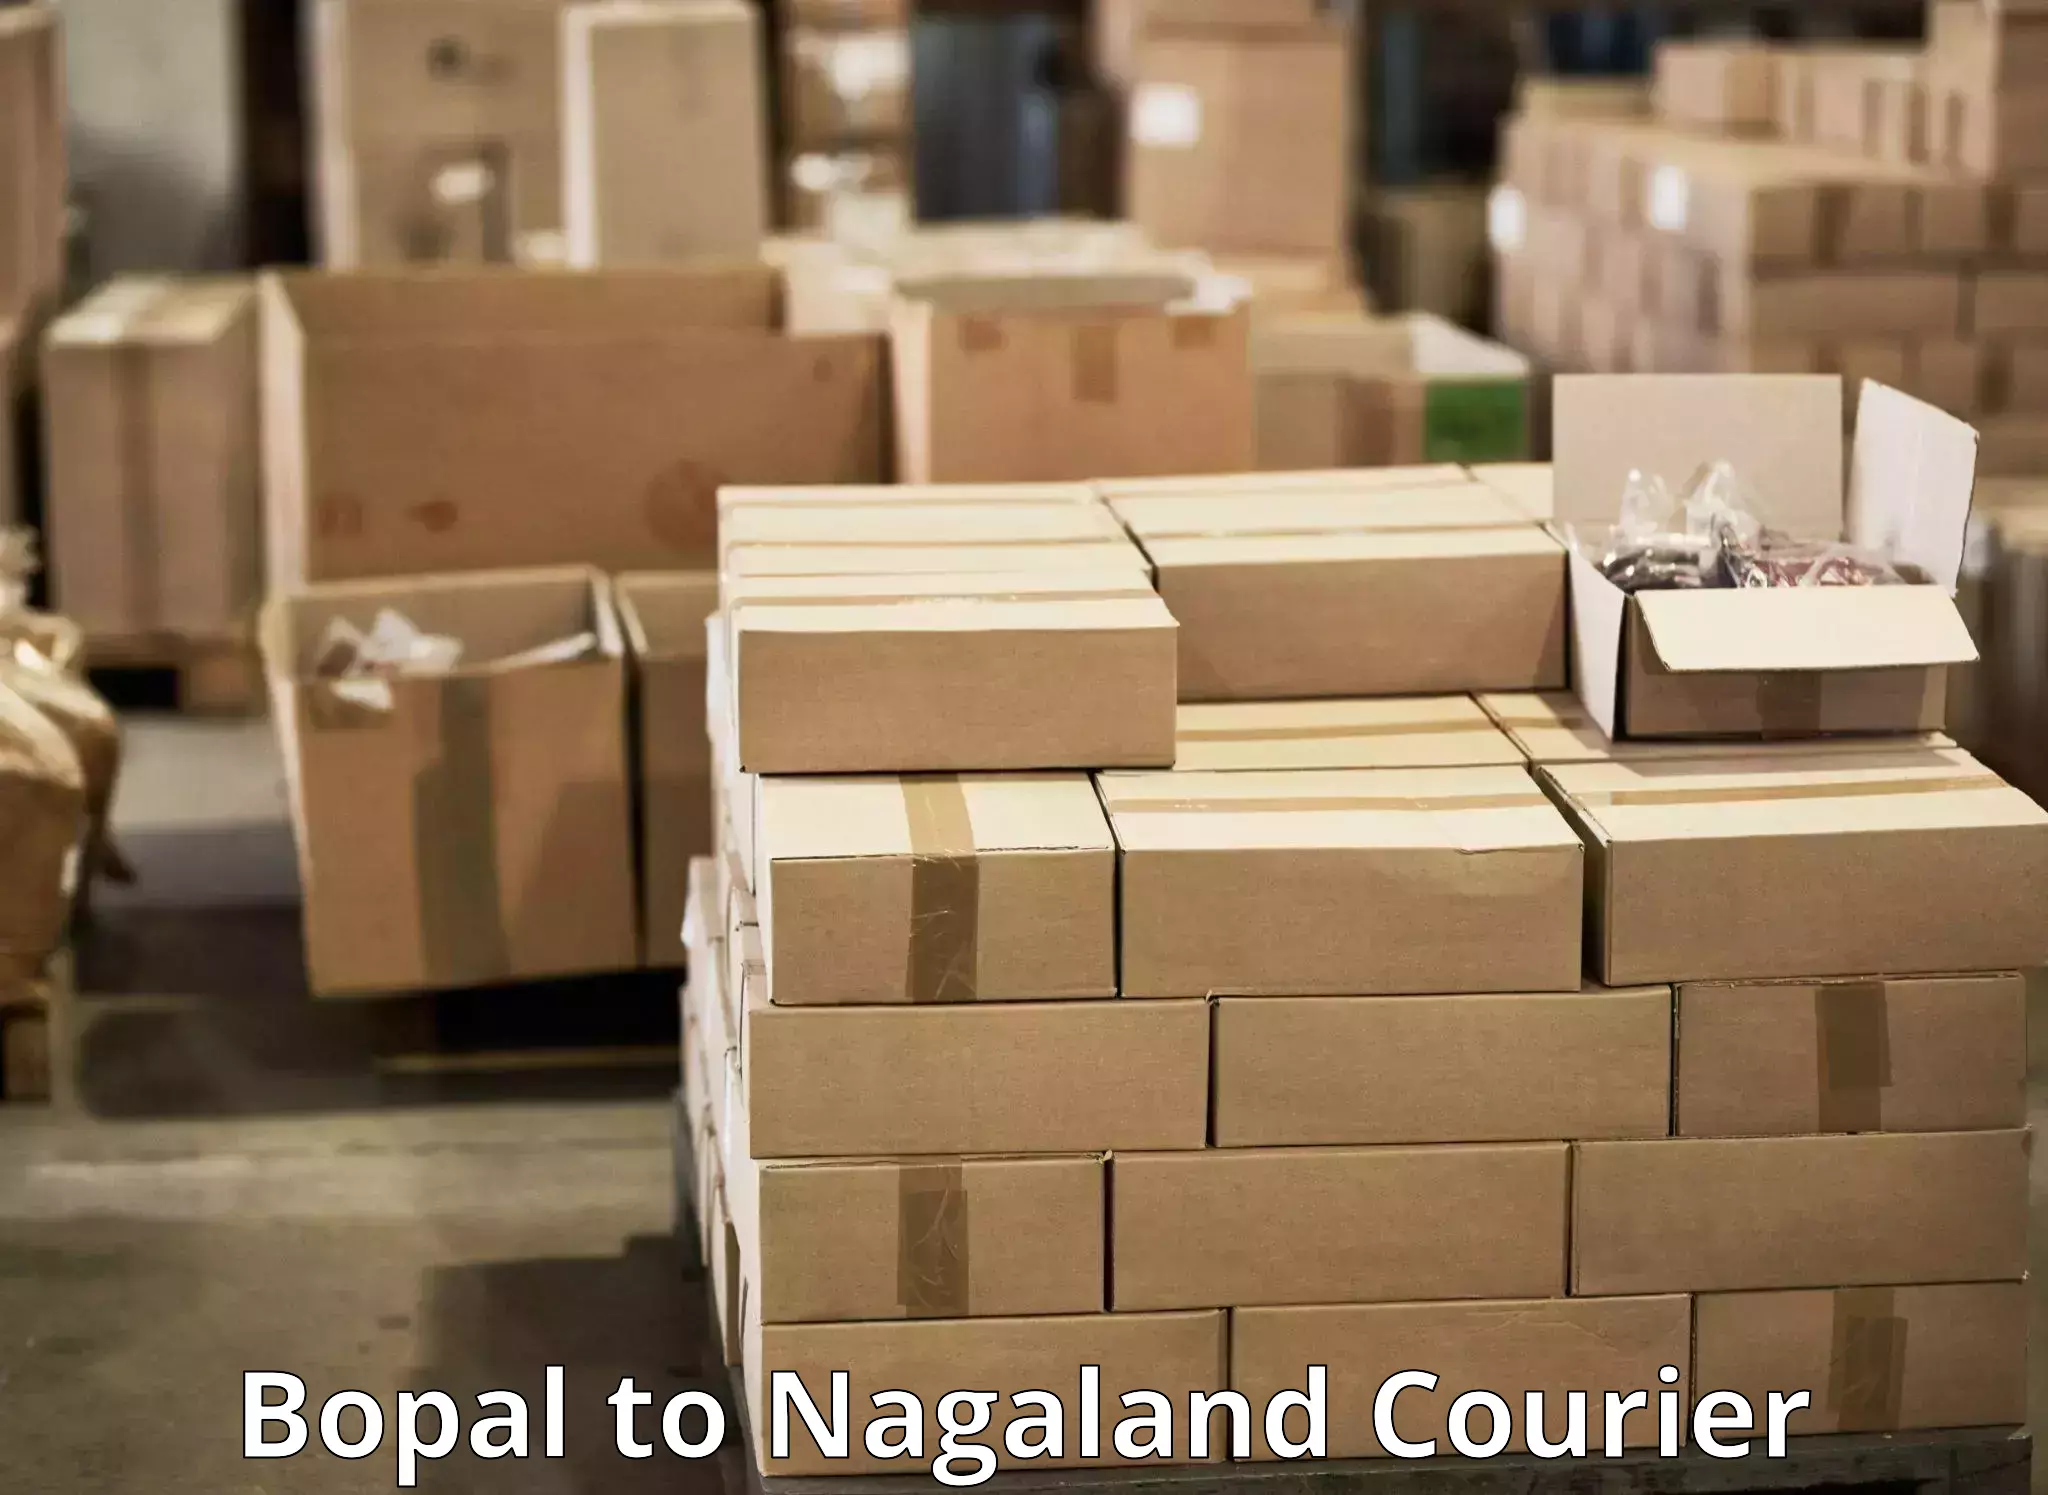 Courier service comparison Bopal to Kohima